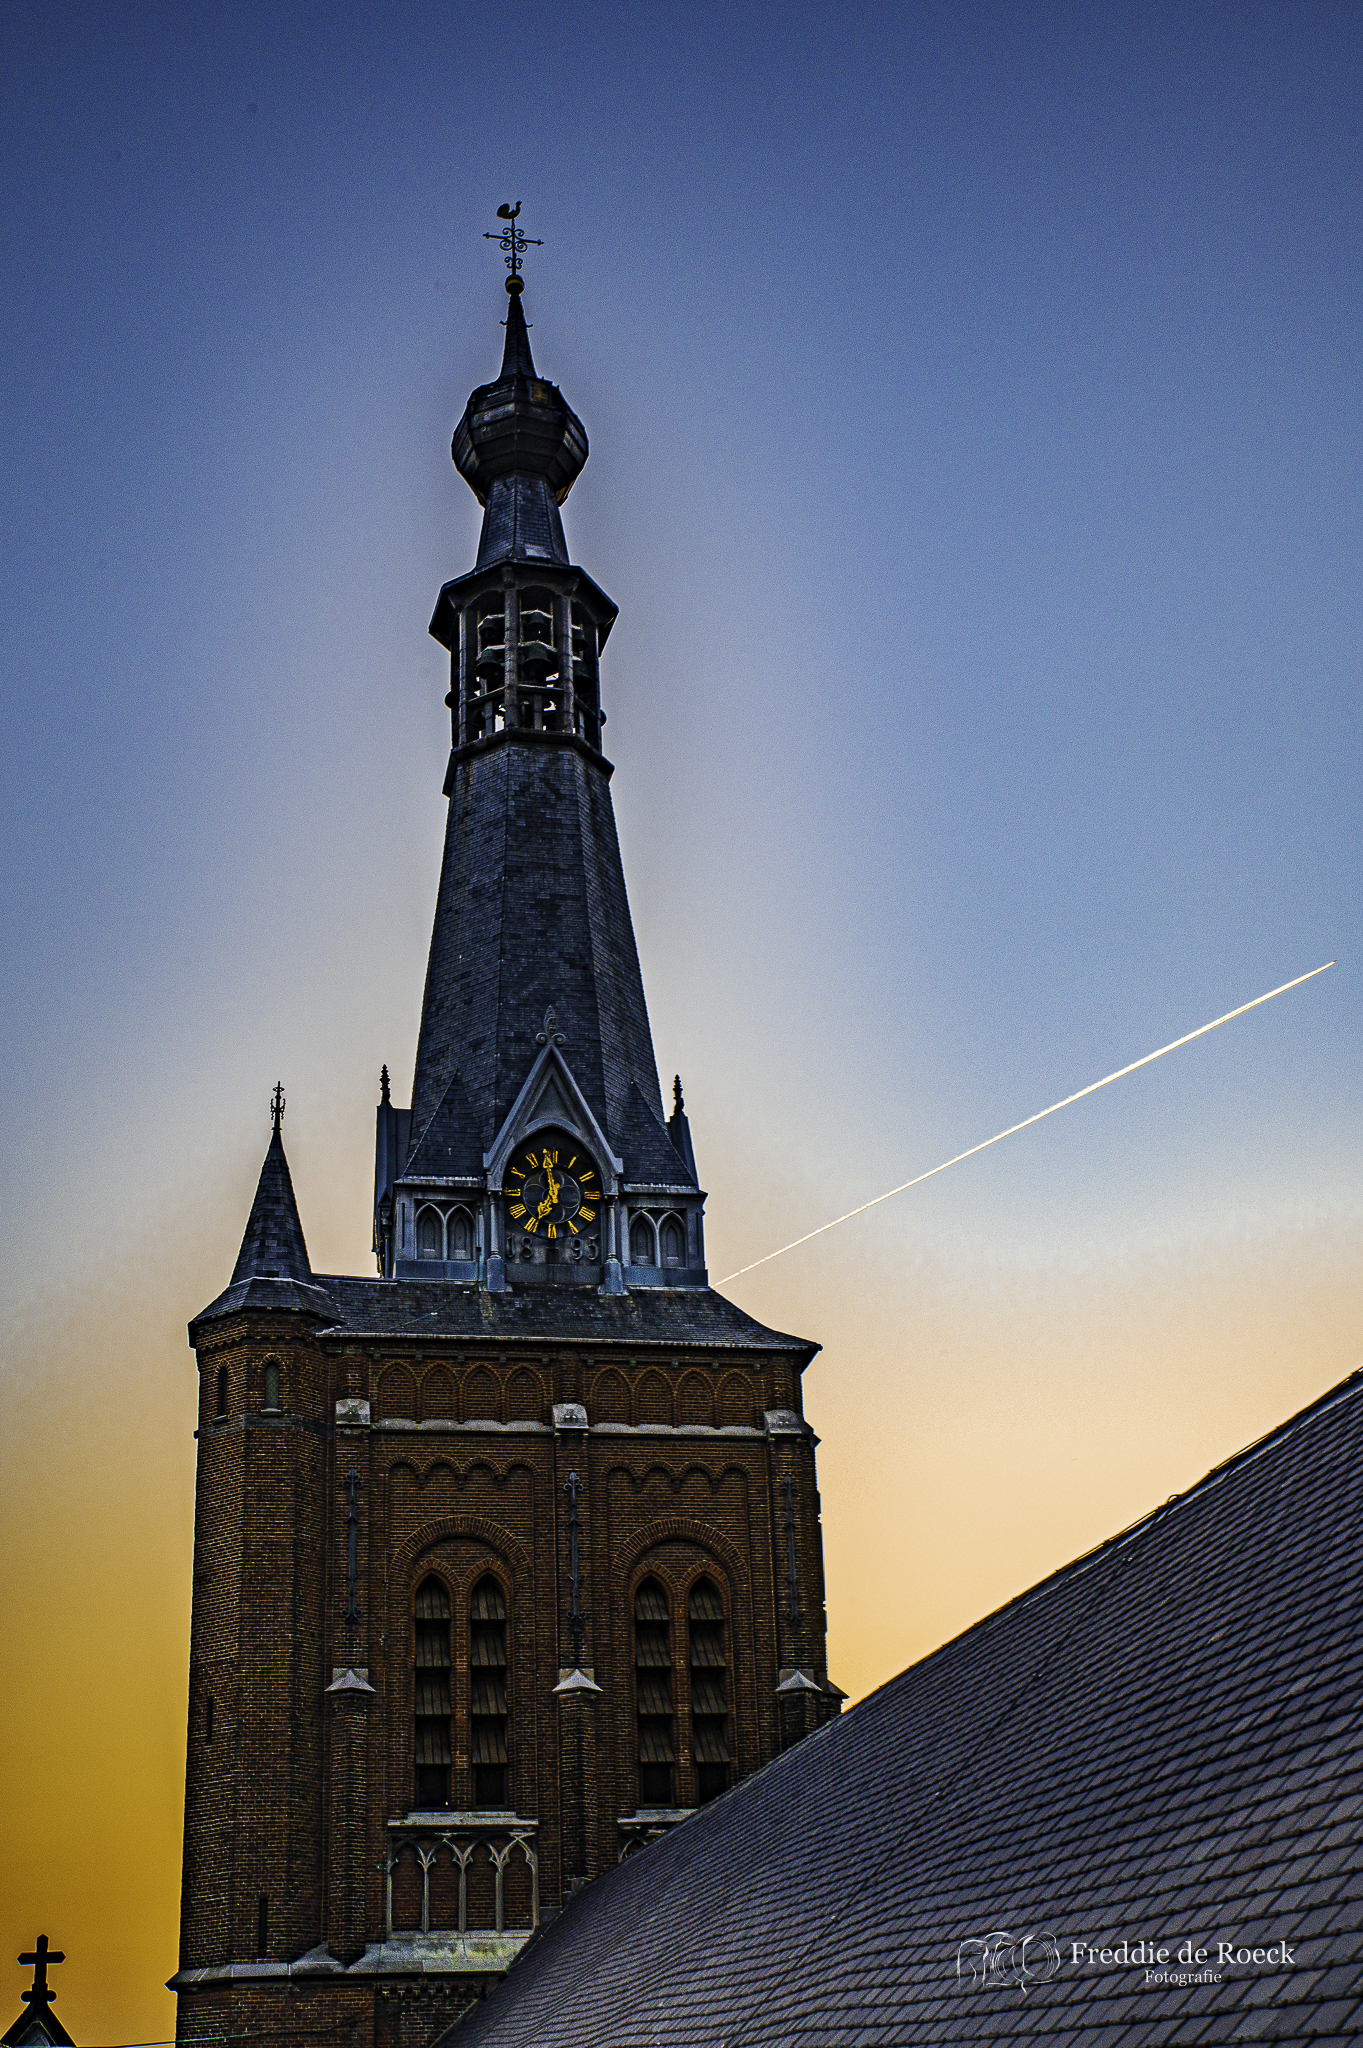 Heikese kerk _ Skyline van Tilburg  _  Foto _ Freddie de Roeck  _  26 maart 2022 _  -4jpg